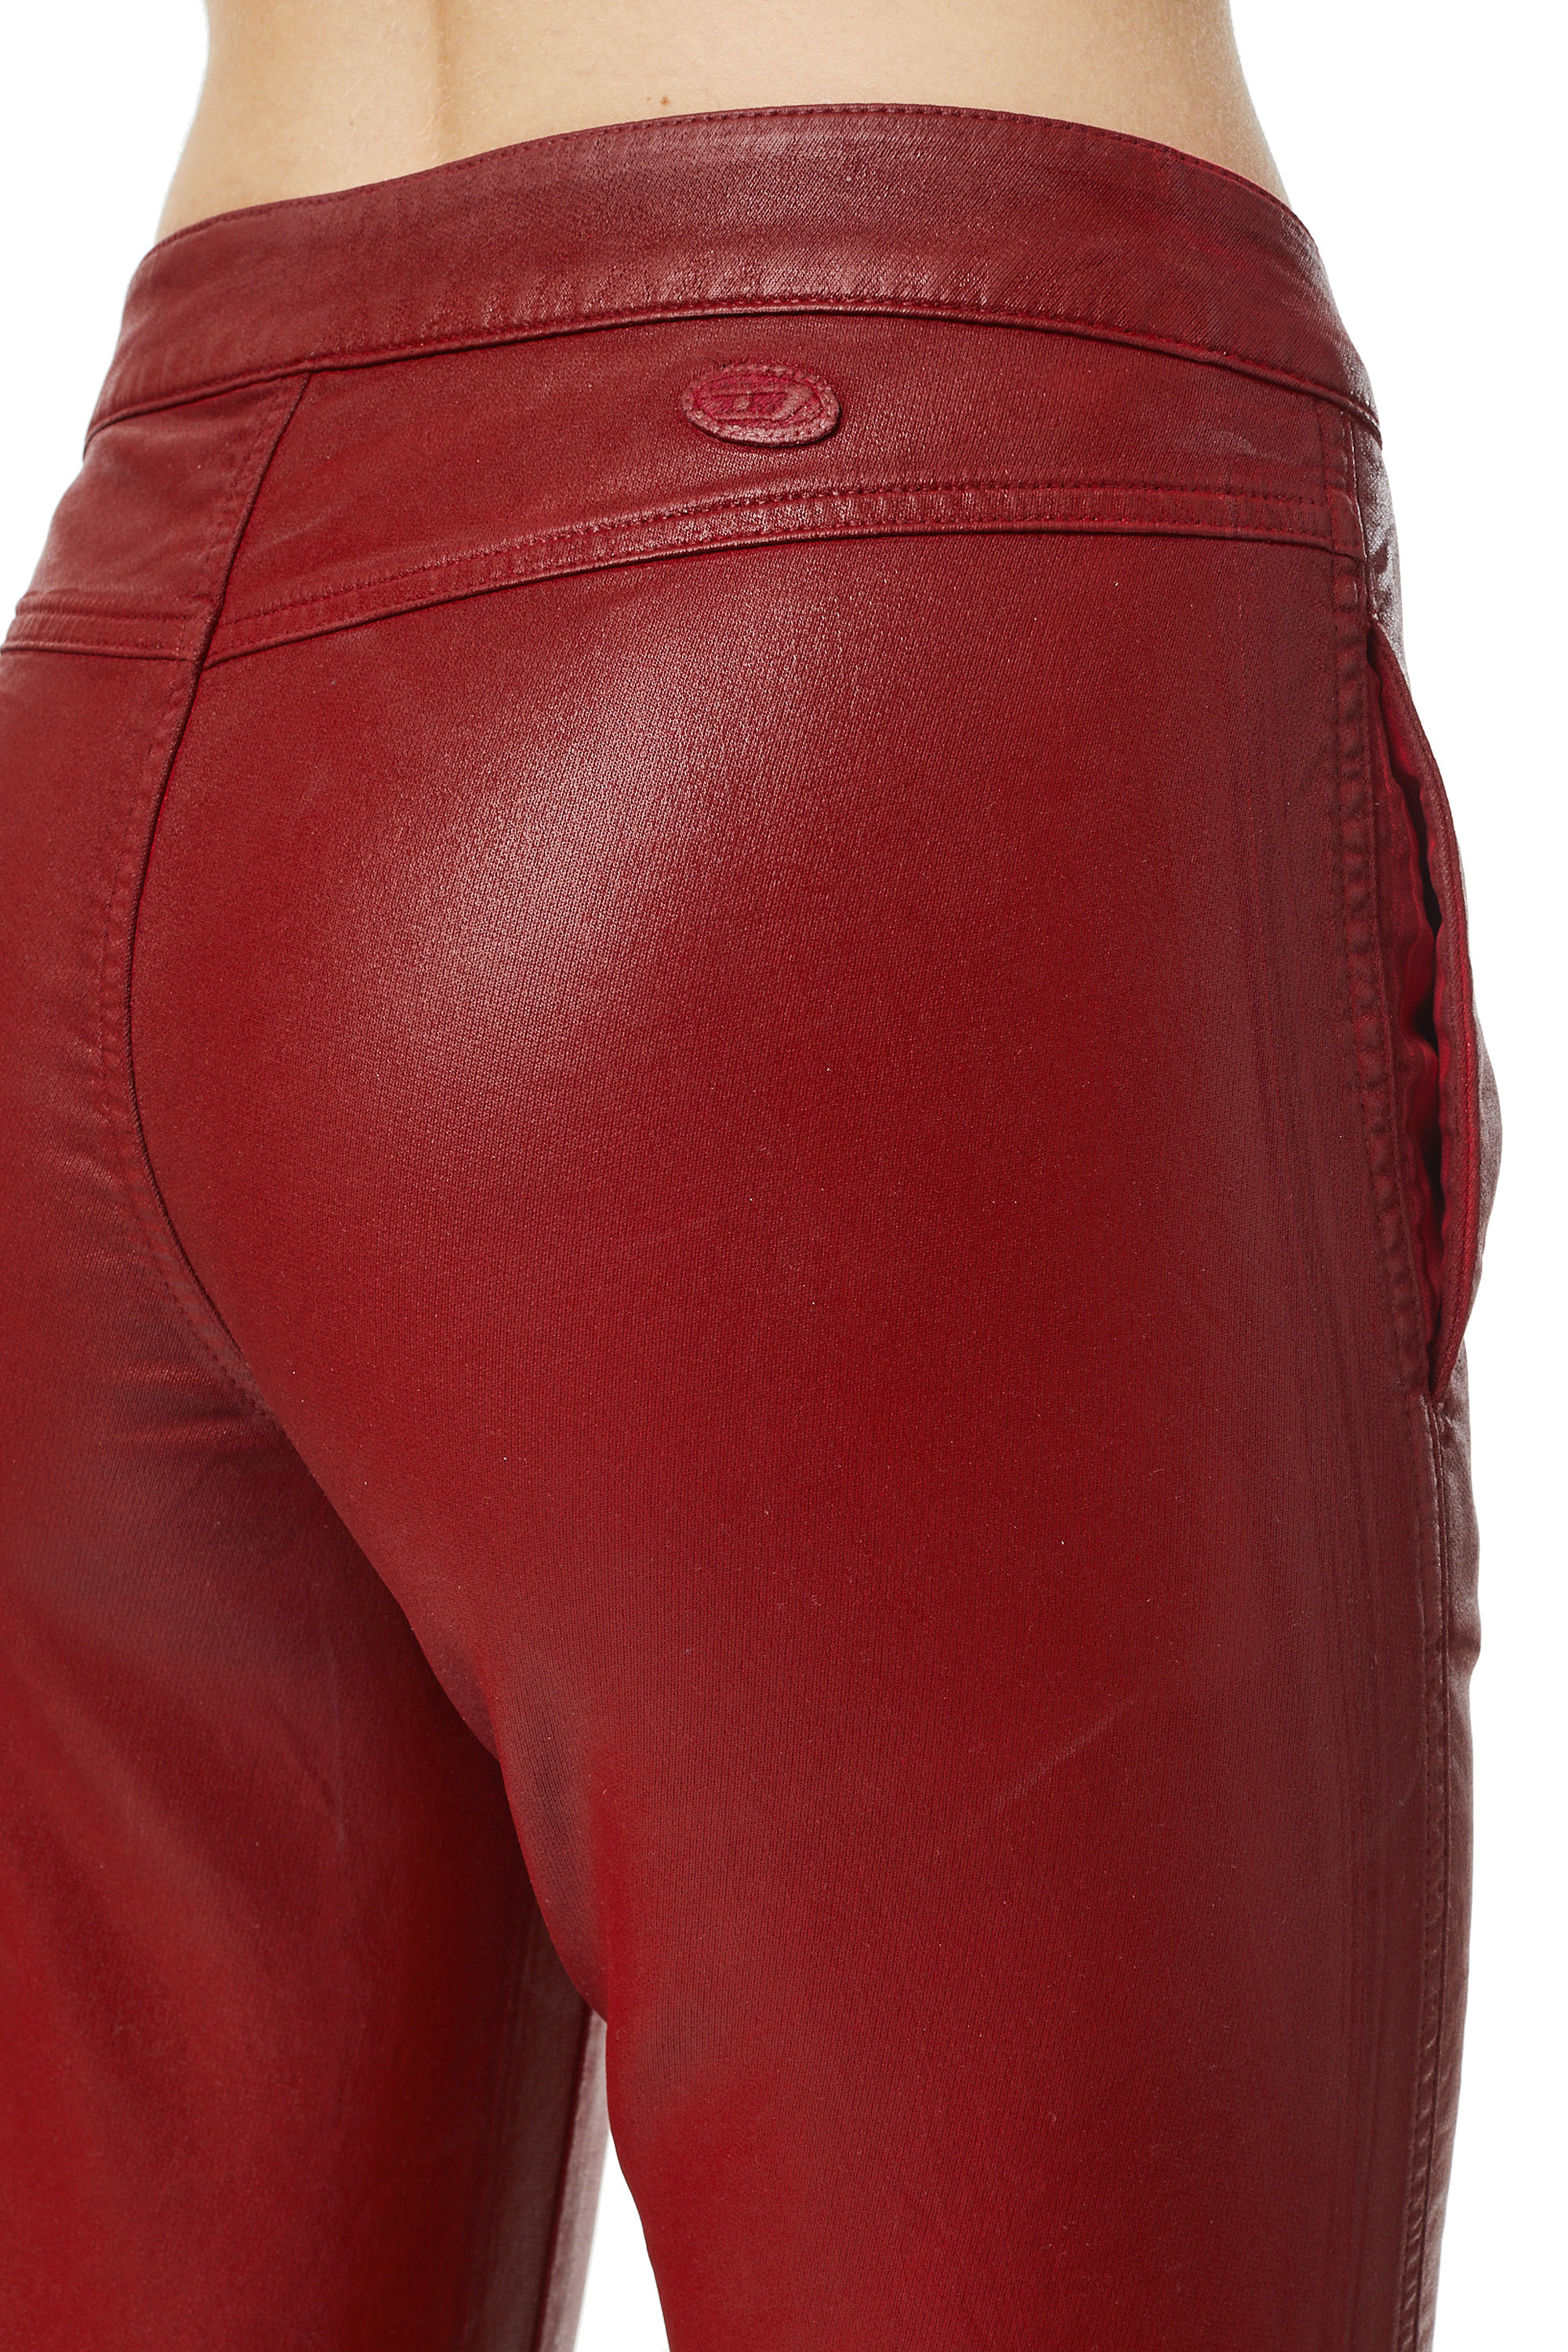 Diesel - BABHILA JoggJeans® 069YV Skinny, Red - Image 3